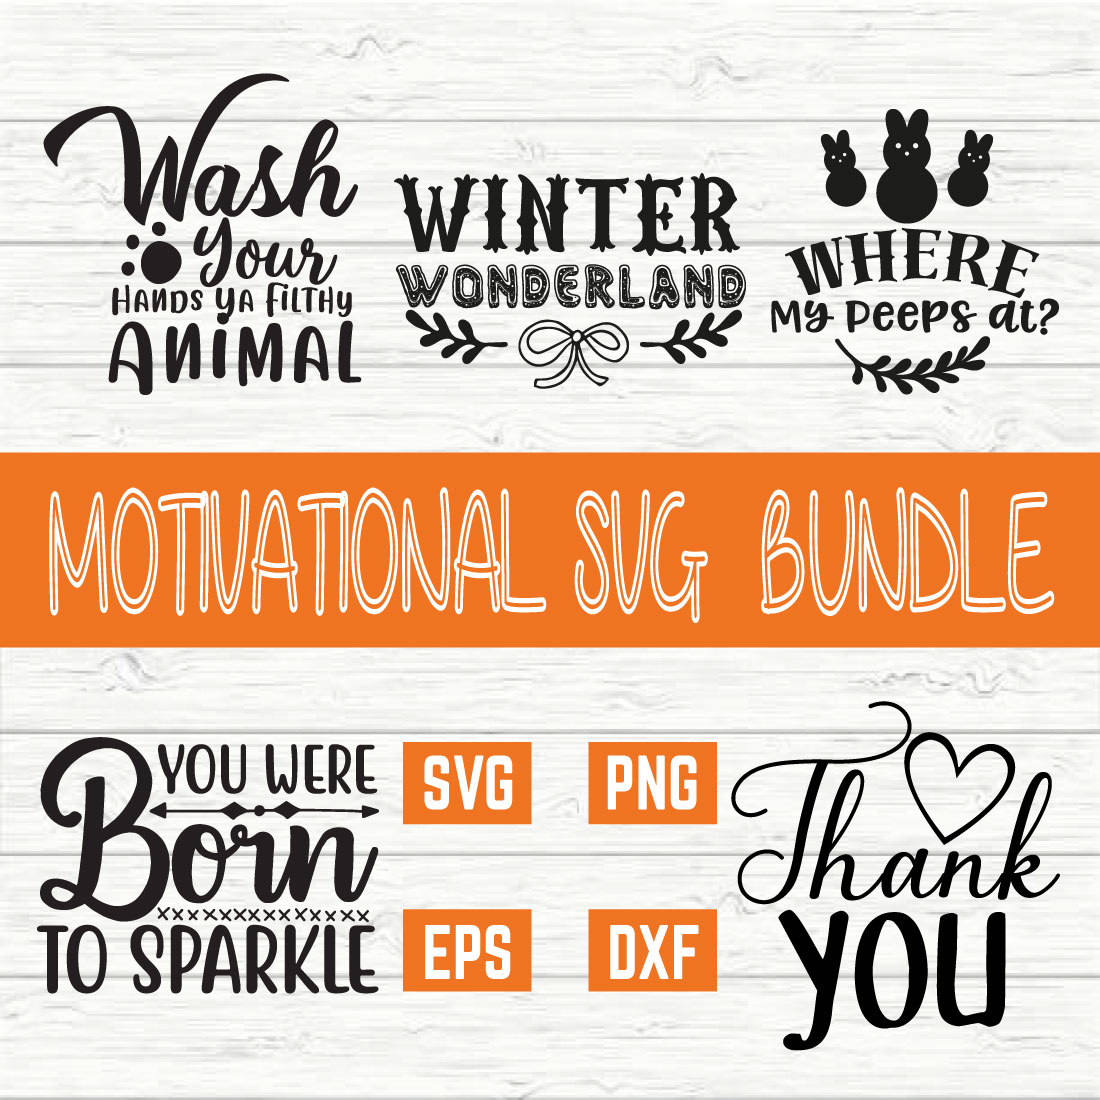 Motivational Svg Typography Bundle vol 45 cover image.